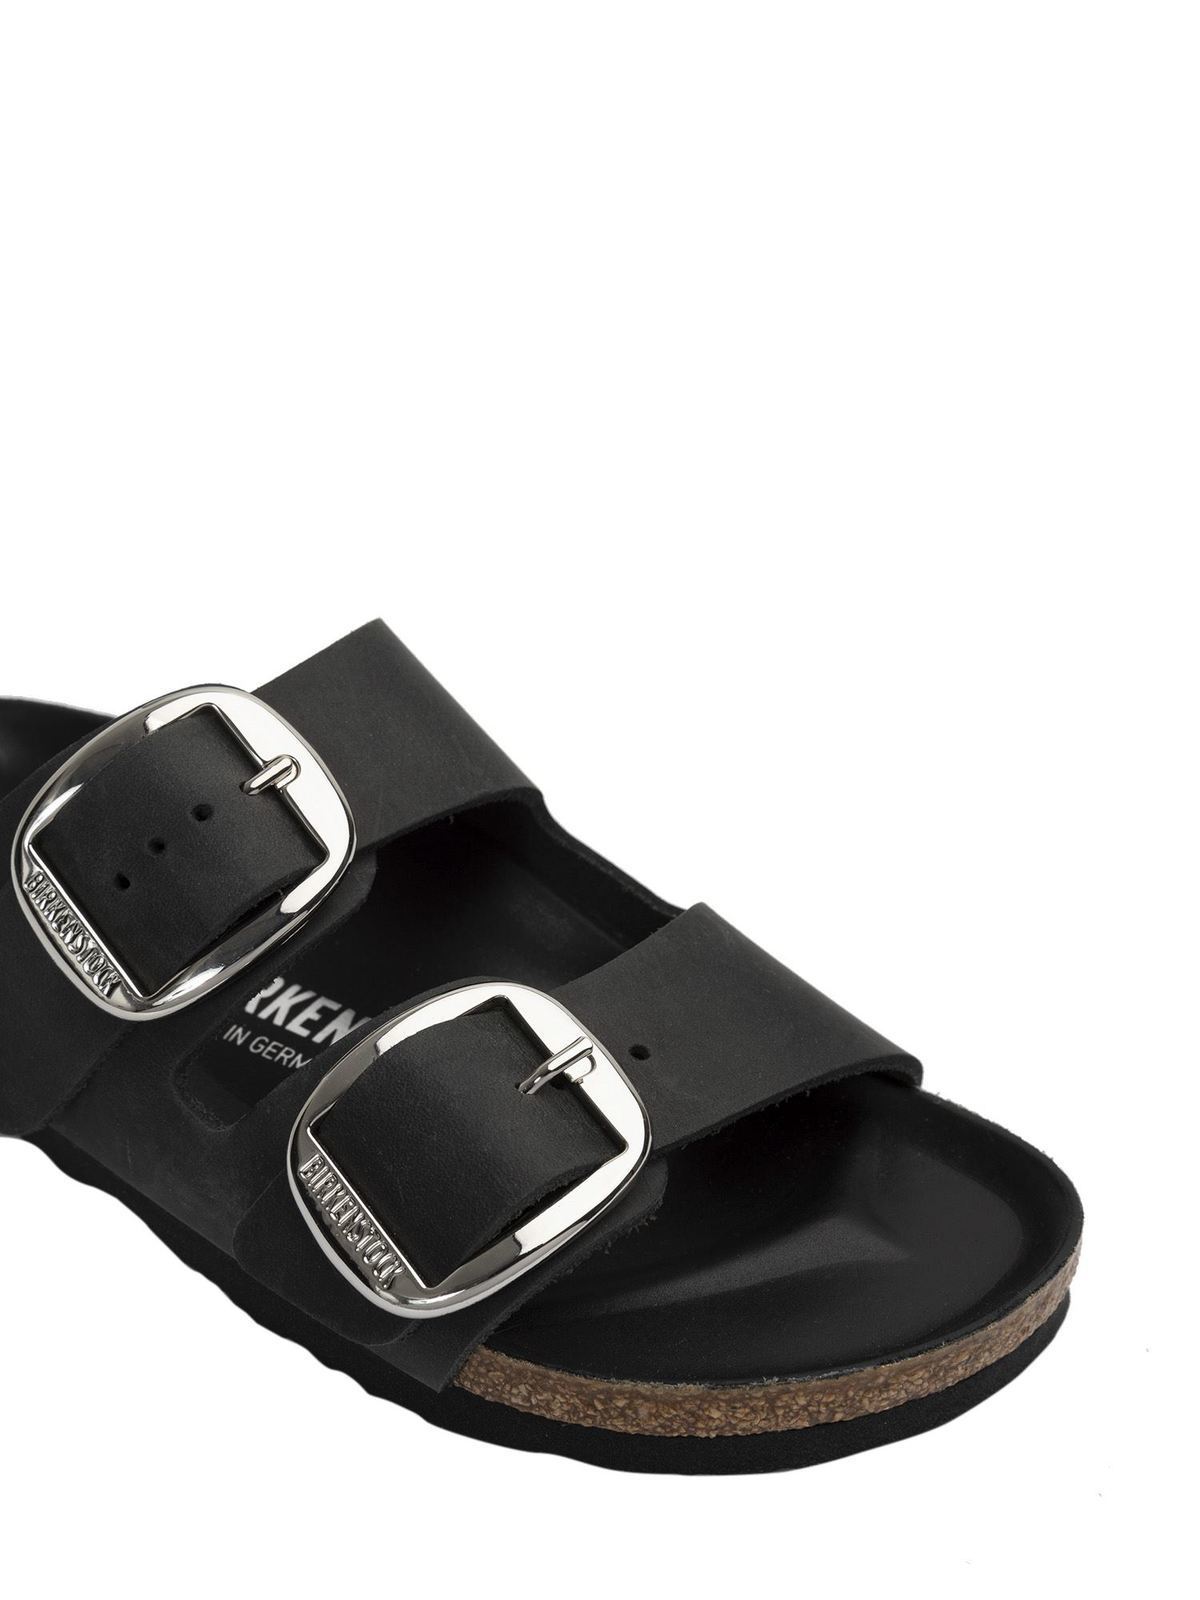 Birkenstock - Arizona Big Buckle sandals in Black - sandals - 1011075